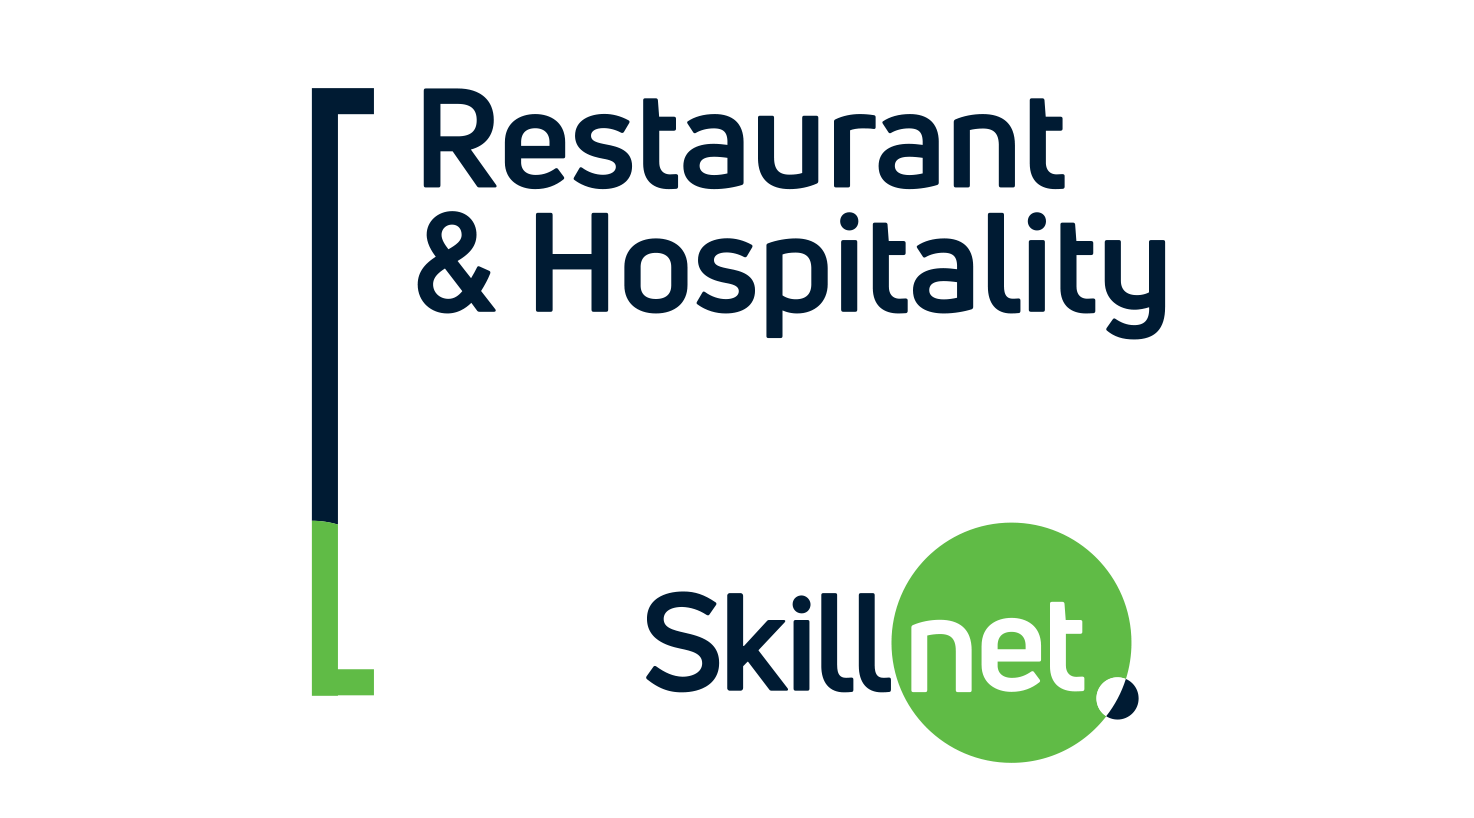 Restaurant & Hospitality Skillnet